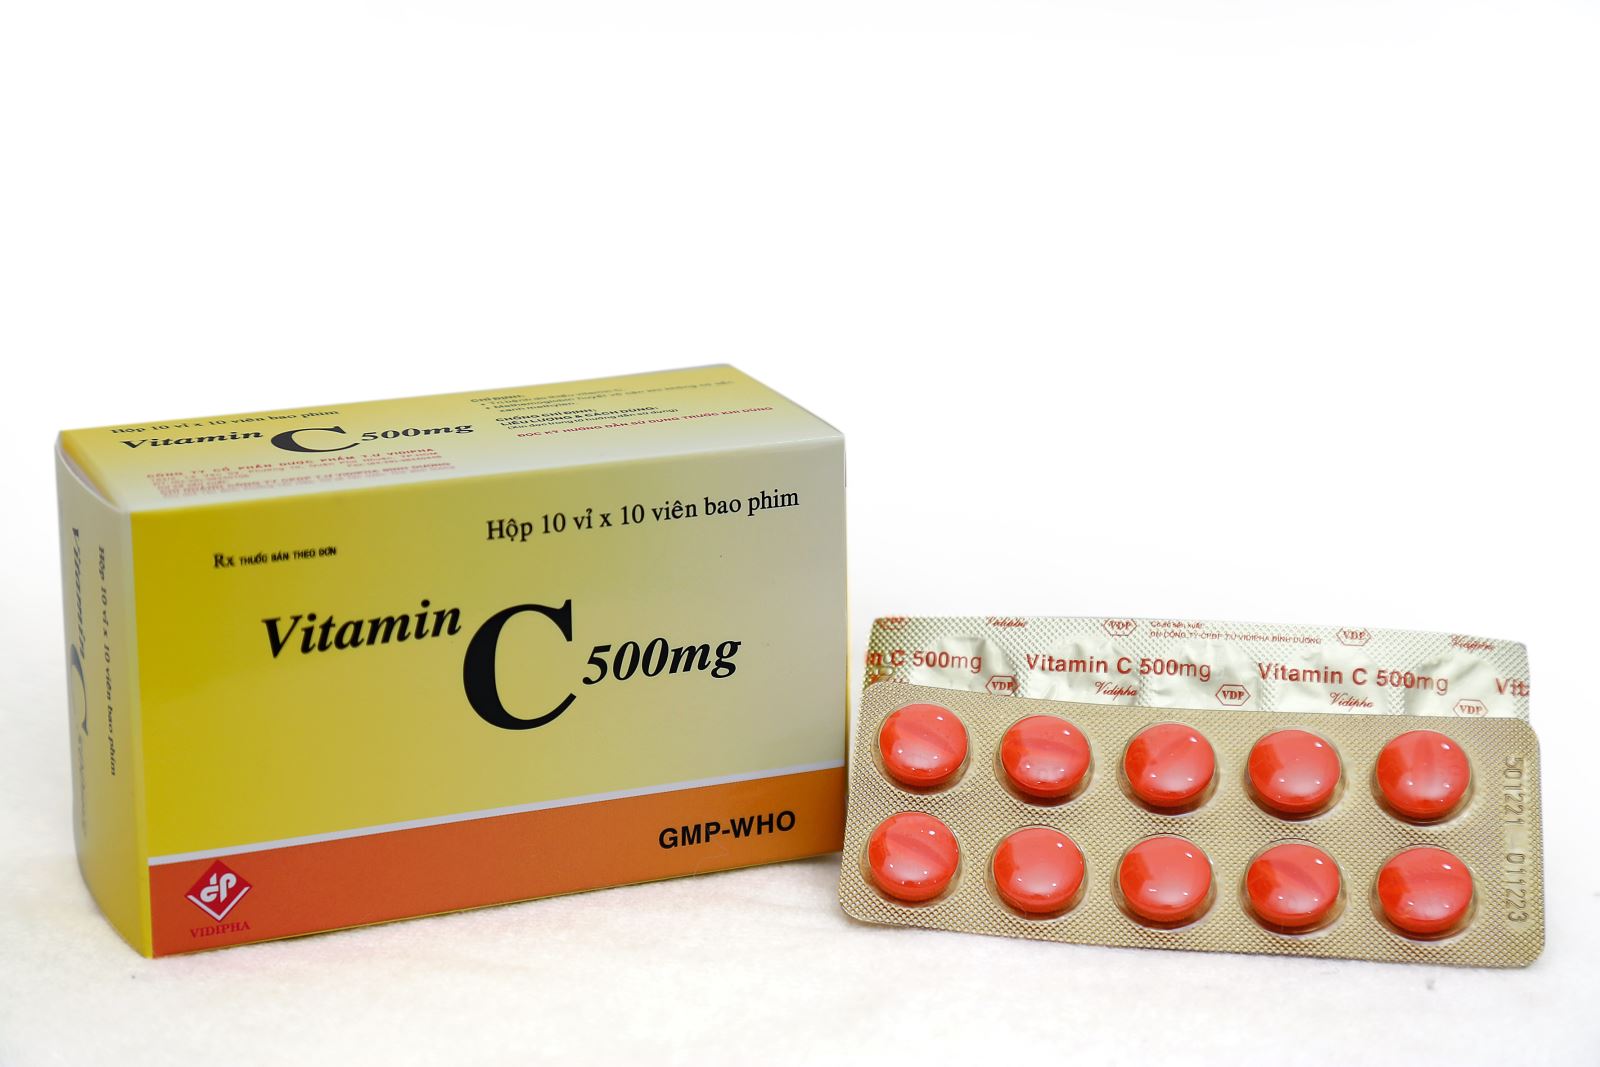 Vitamin C 500mg vỉ có tác dụng diệt khuẩn và nhiễm độc không?
